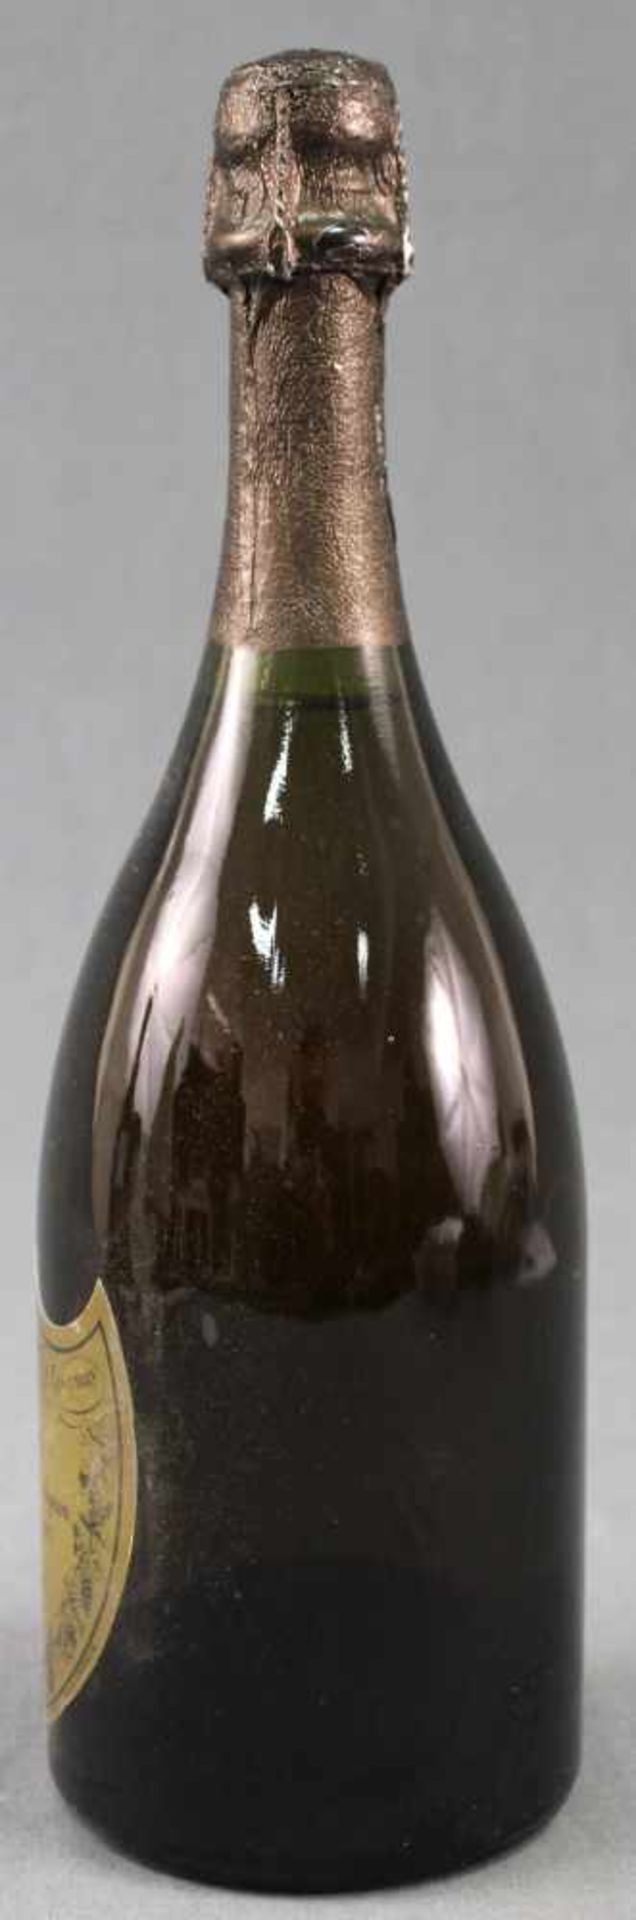 1983 Vintage. Cuvée Don Perignon. Champagne.1 ganze Flasche 12,5% vol. 75 cl. Moet et Chandon à - Bild 2 aus 9